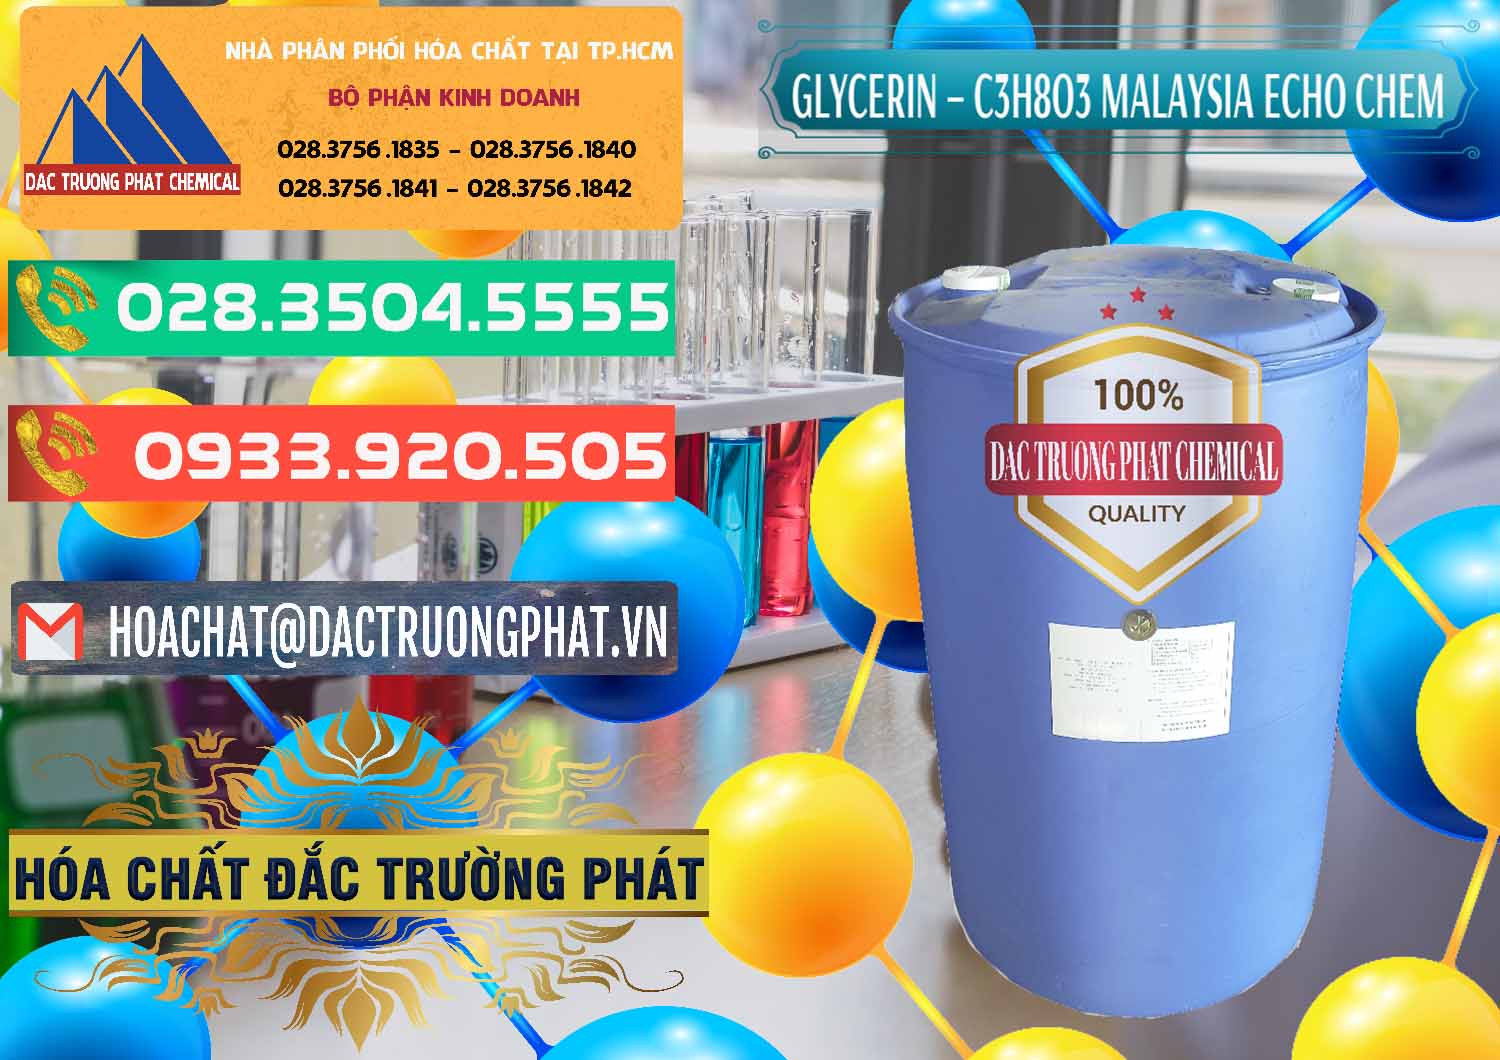 Nơi chuyên bán và cung cấp Glycerin – C3H8O3 99.7% Echo Chem Malaysia - 0273 - Công ty chuyên cung cấp _ bán hóa chất tại TP.HCM - congtyhoachat.com.vn